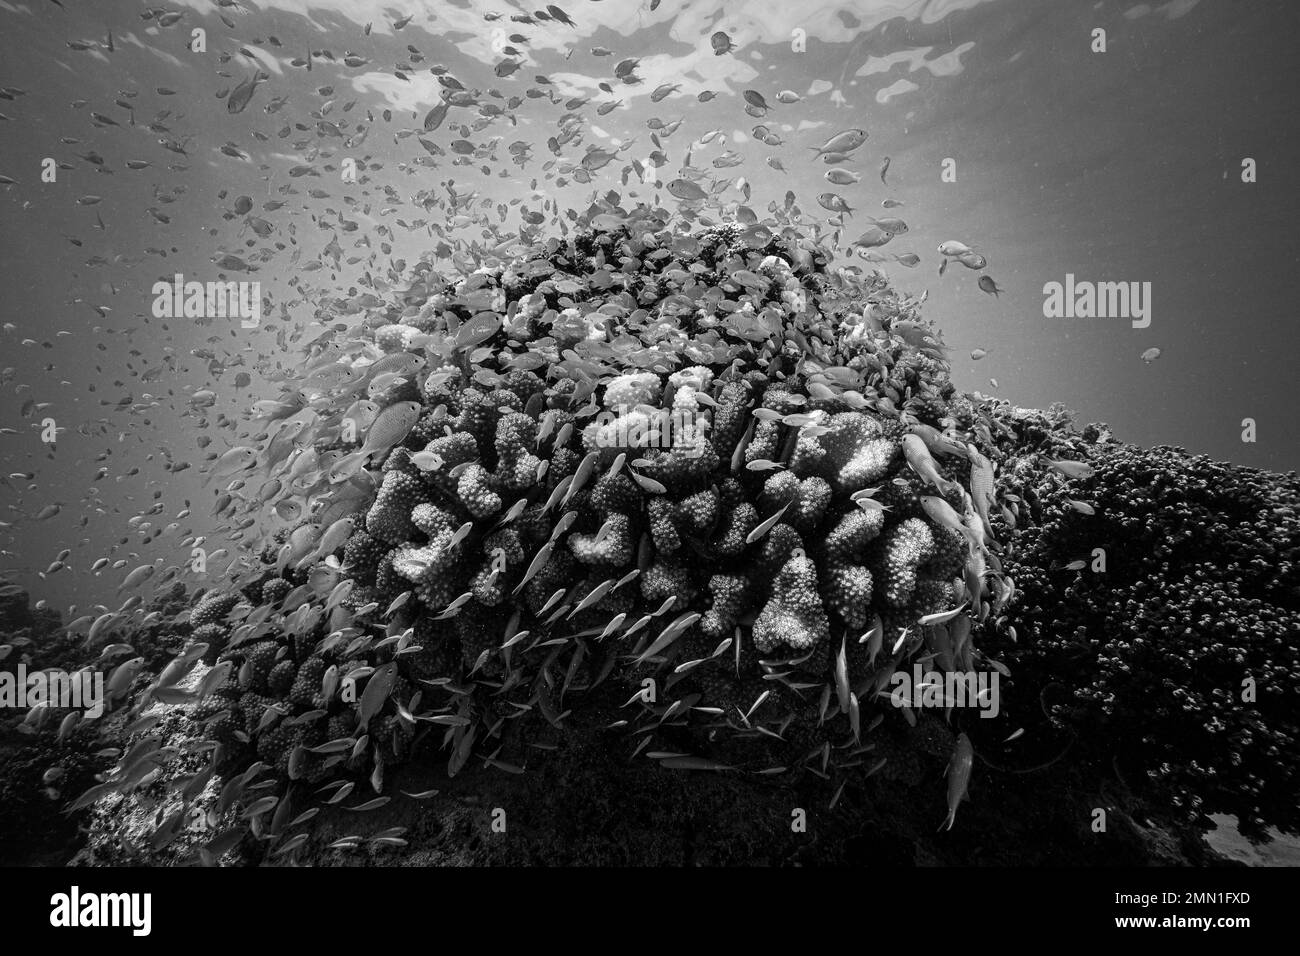 Joven Damselfish escondido en corales en el arrecife tropical (blanco y negro) Foto de stock